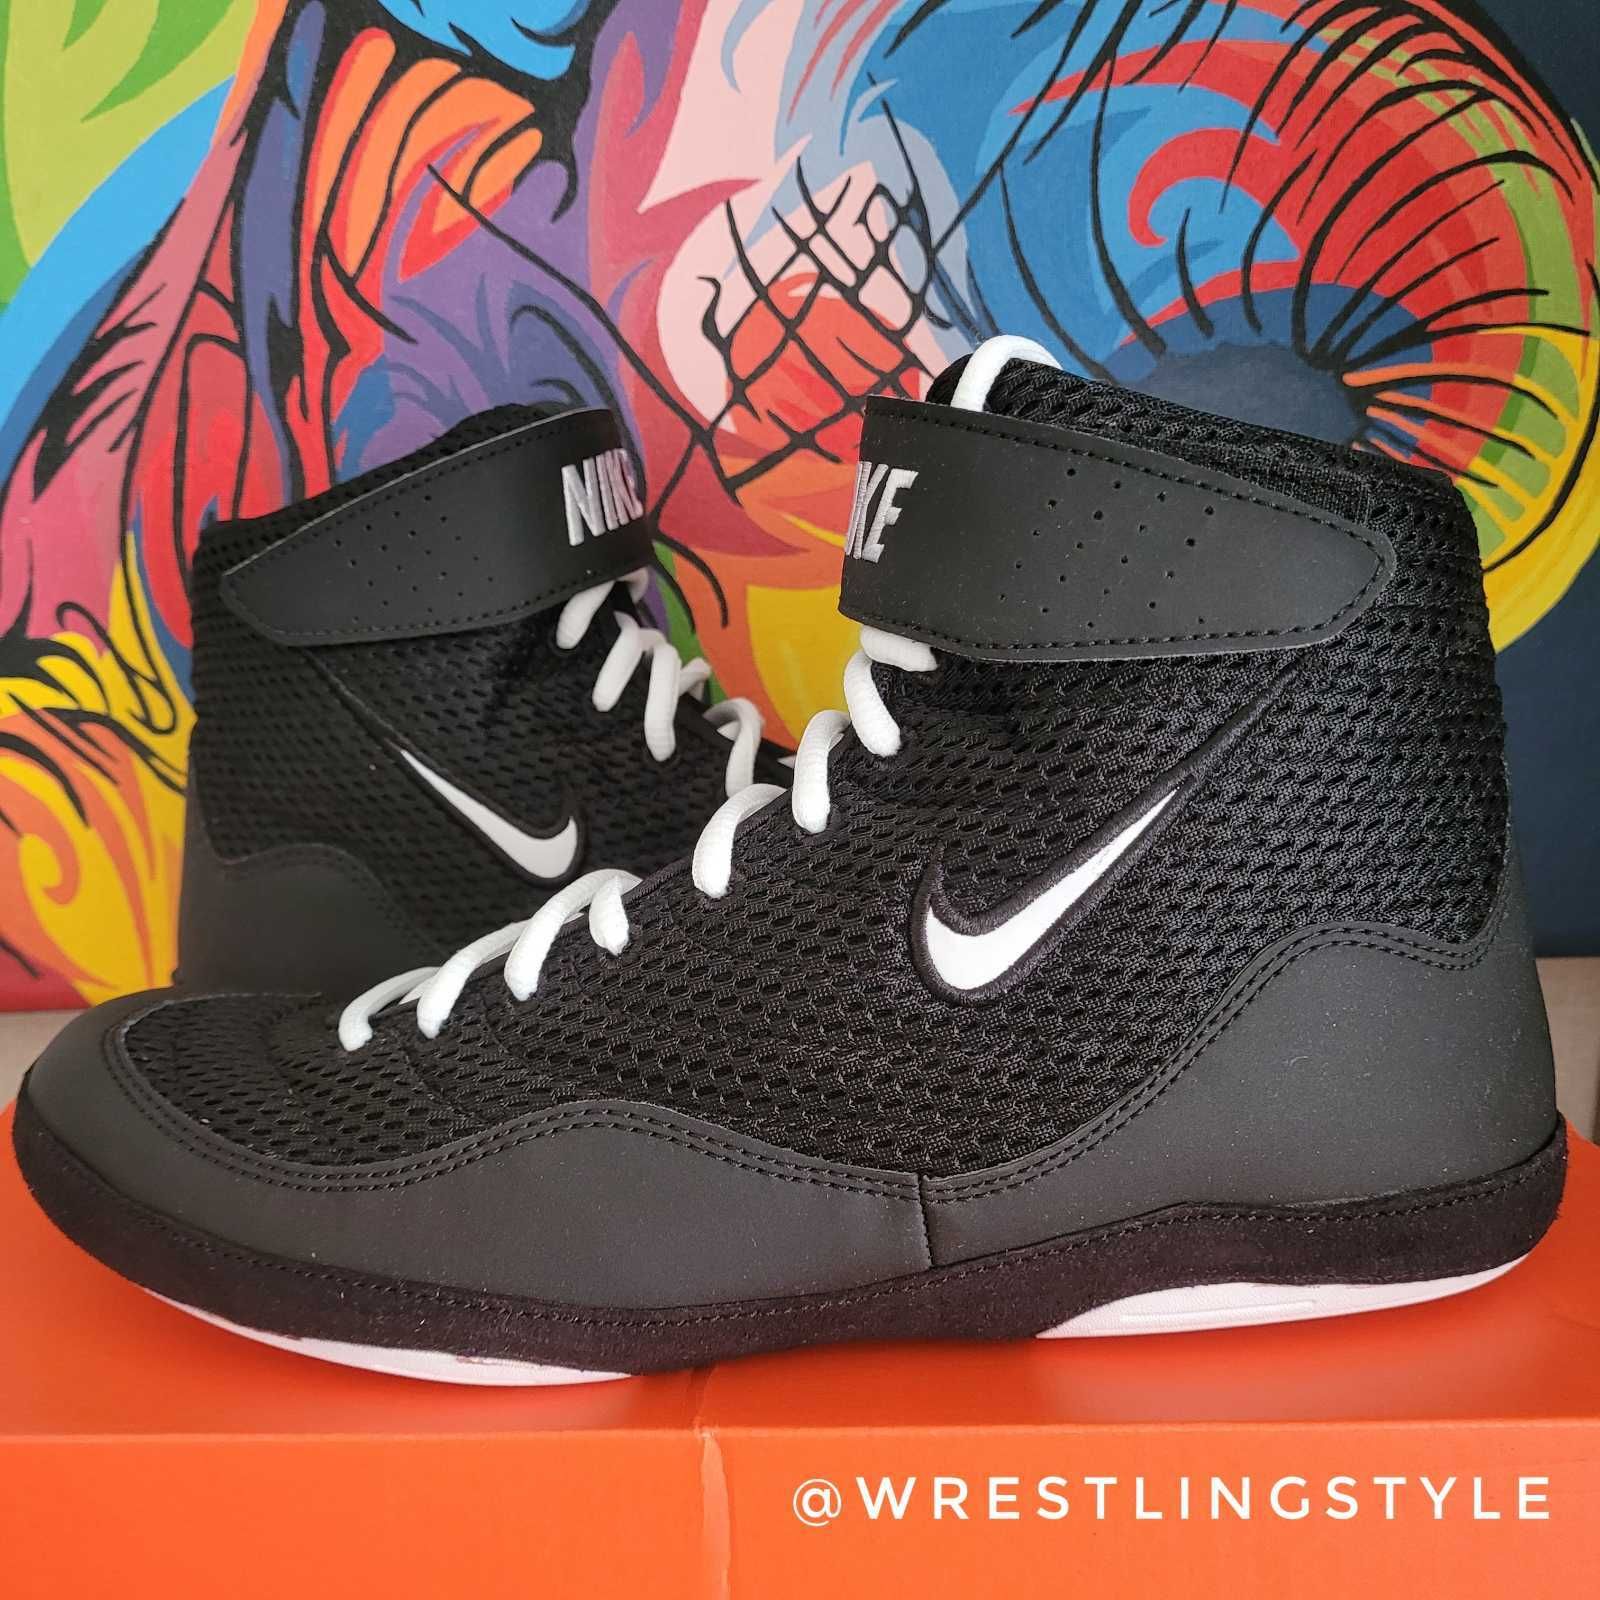 БОРЦОВКИ Nike Inflict 3, взуття для боротьби, боксерки найк оригінал